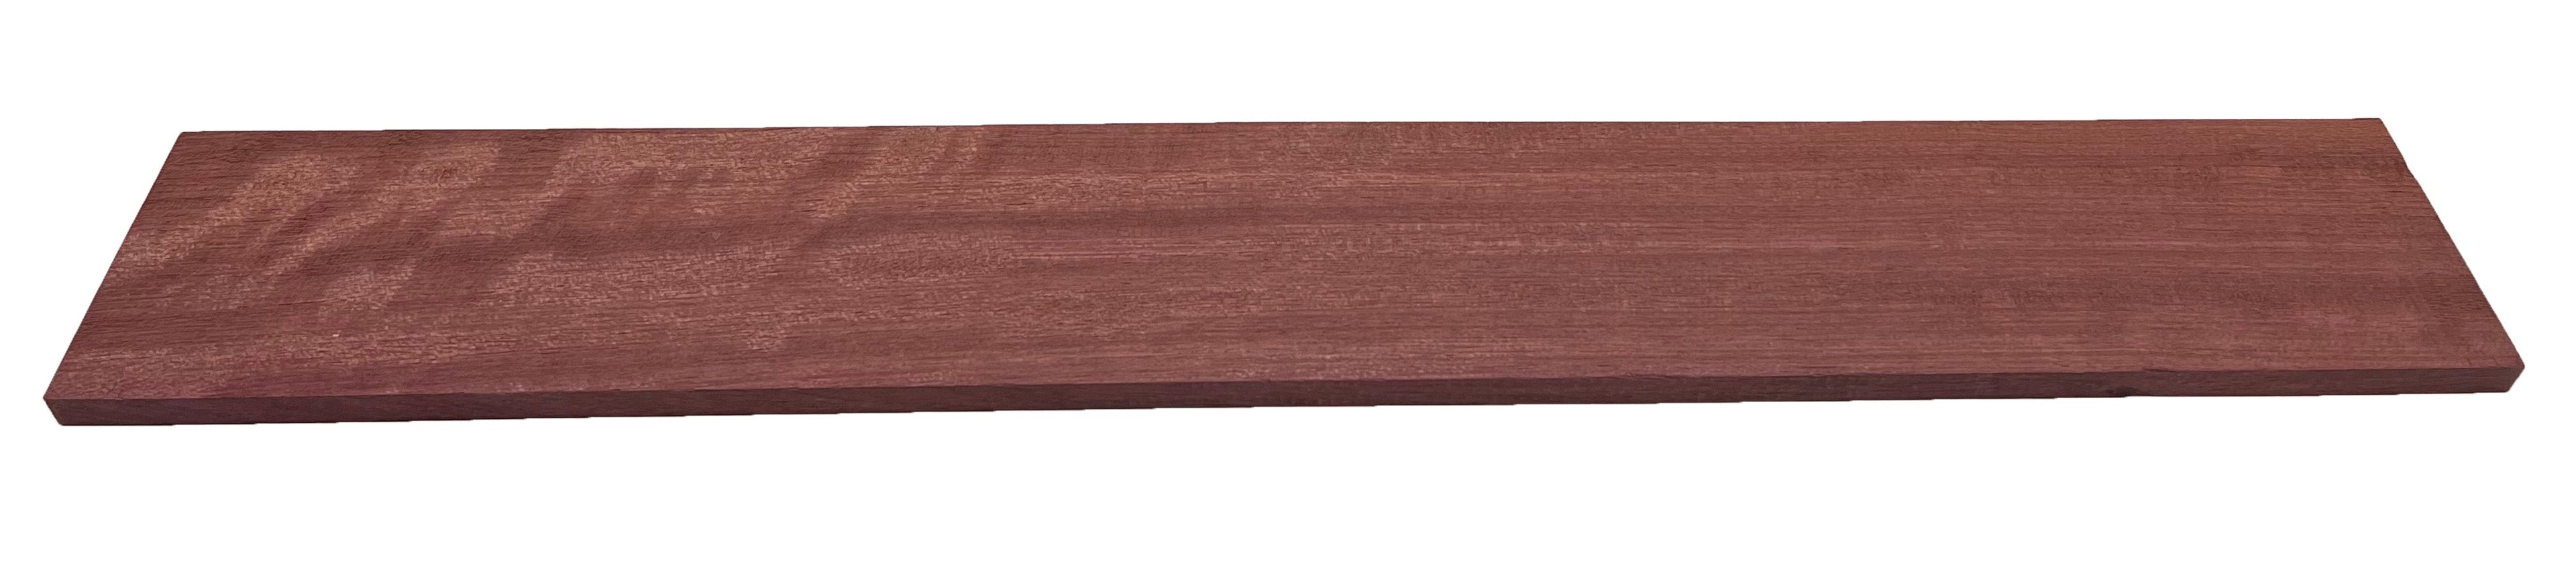 Purpleheart Guitar Fingerboard Blank - Exotic Wood Zone - Buy online Across USA 